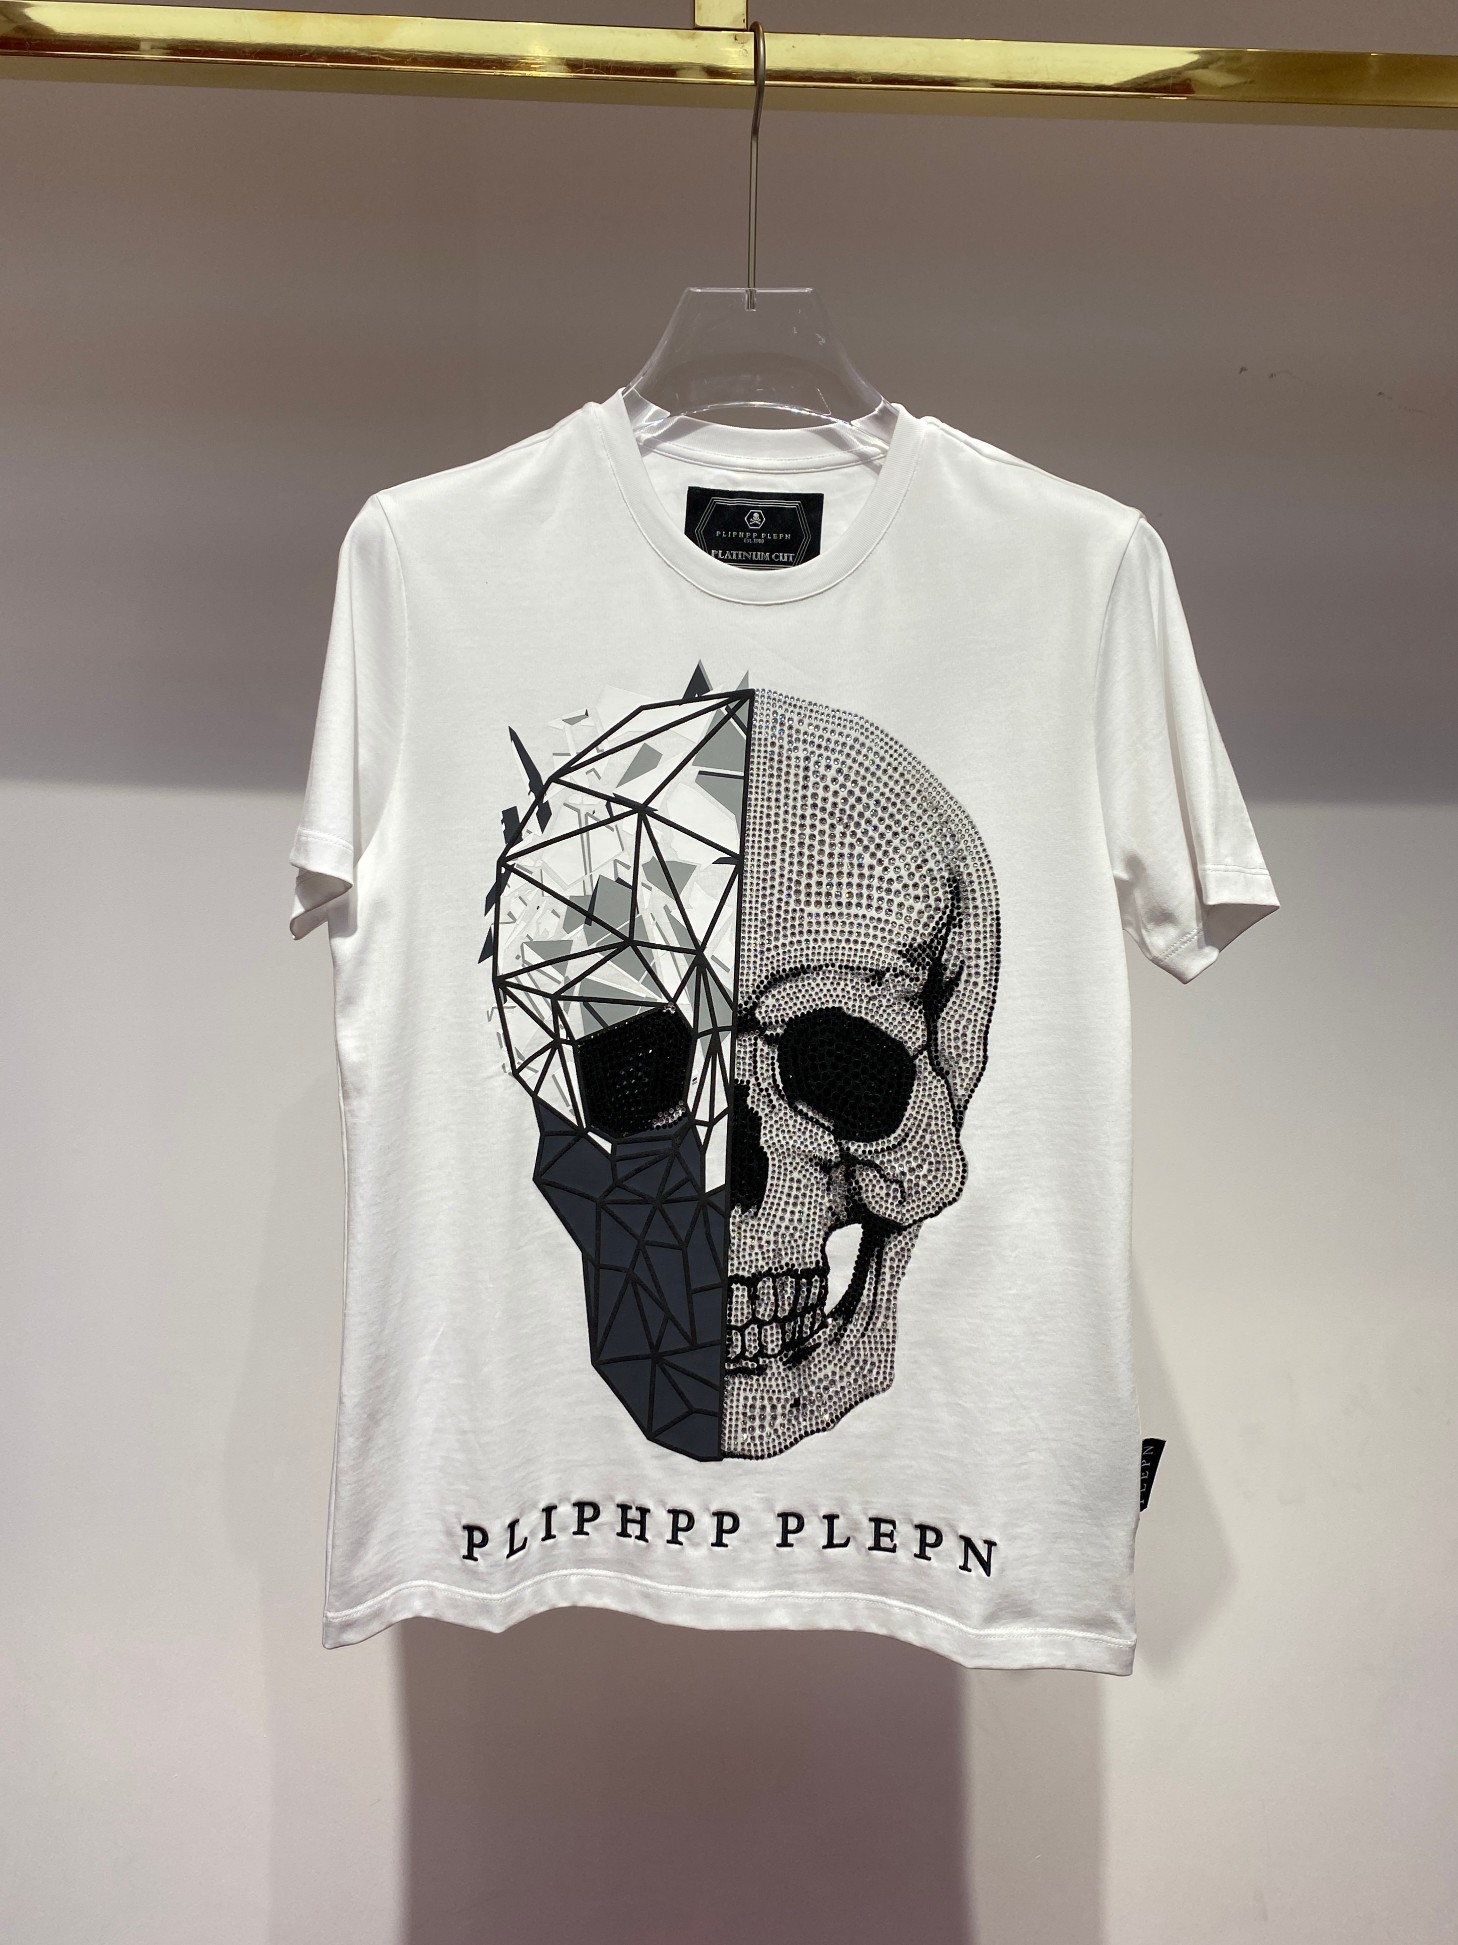 フィリッププレイン tシャツ偽物 ショートシャツ 半袖 ドクロプリント ホワイト_1